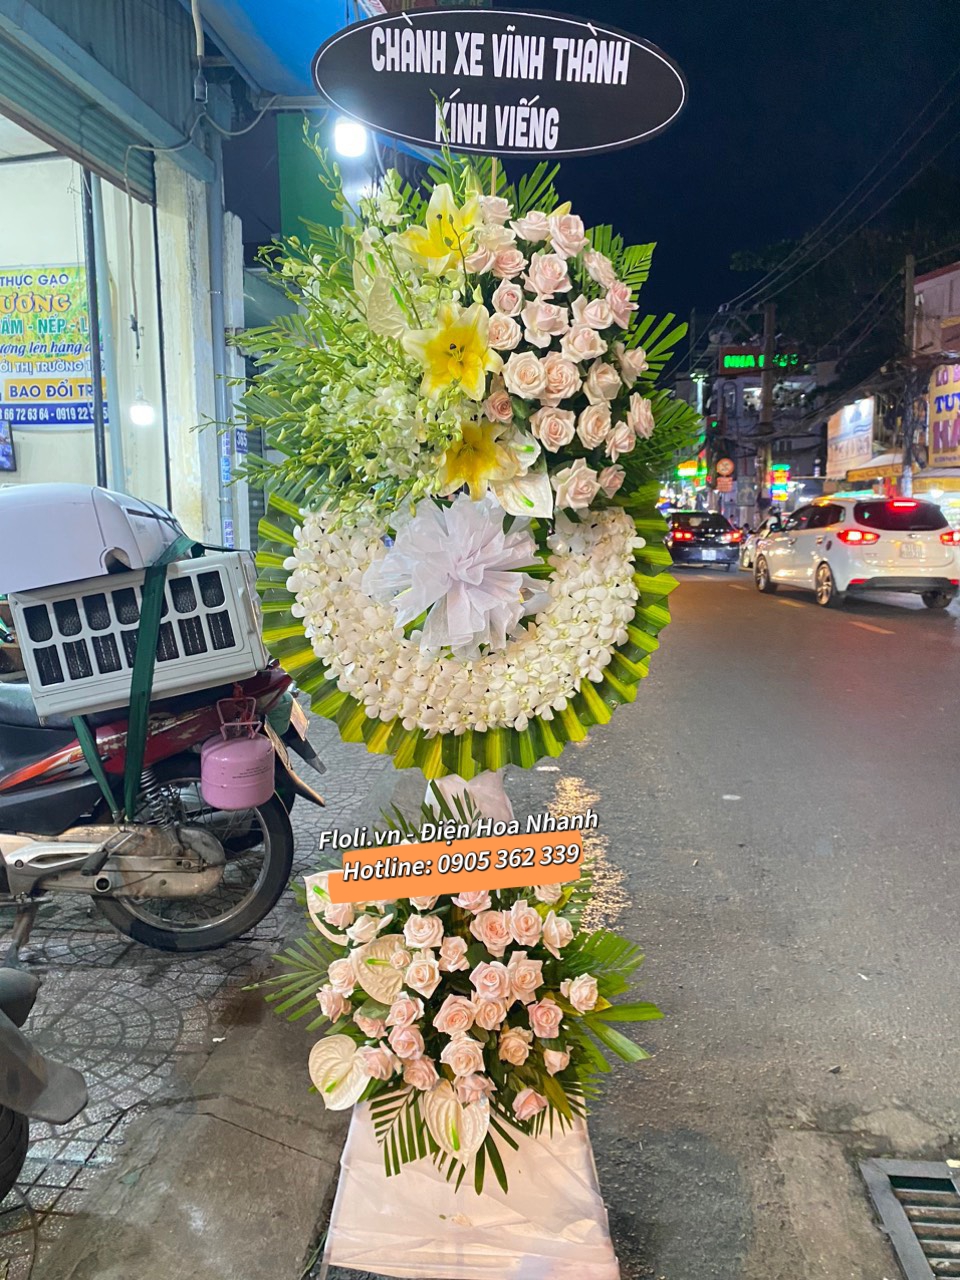 Cửa hàng cung cấp hoa viếng đám tang đẹp nhất quận 12